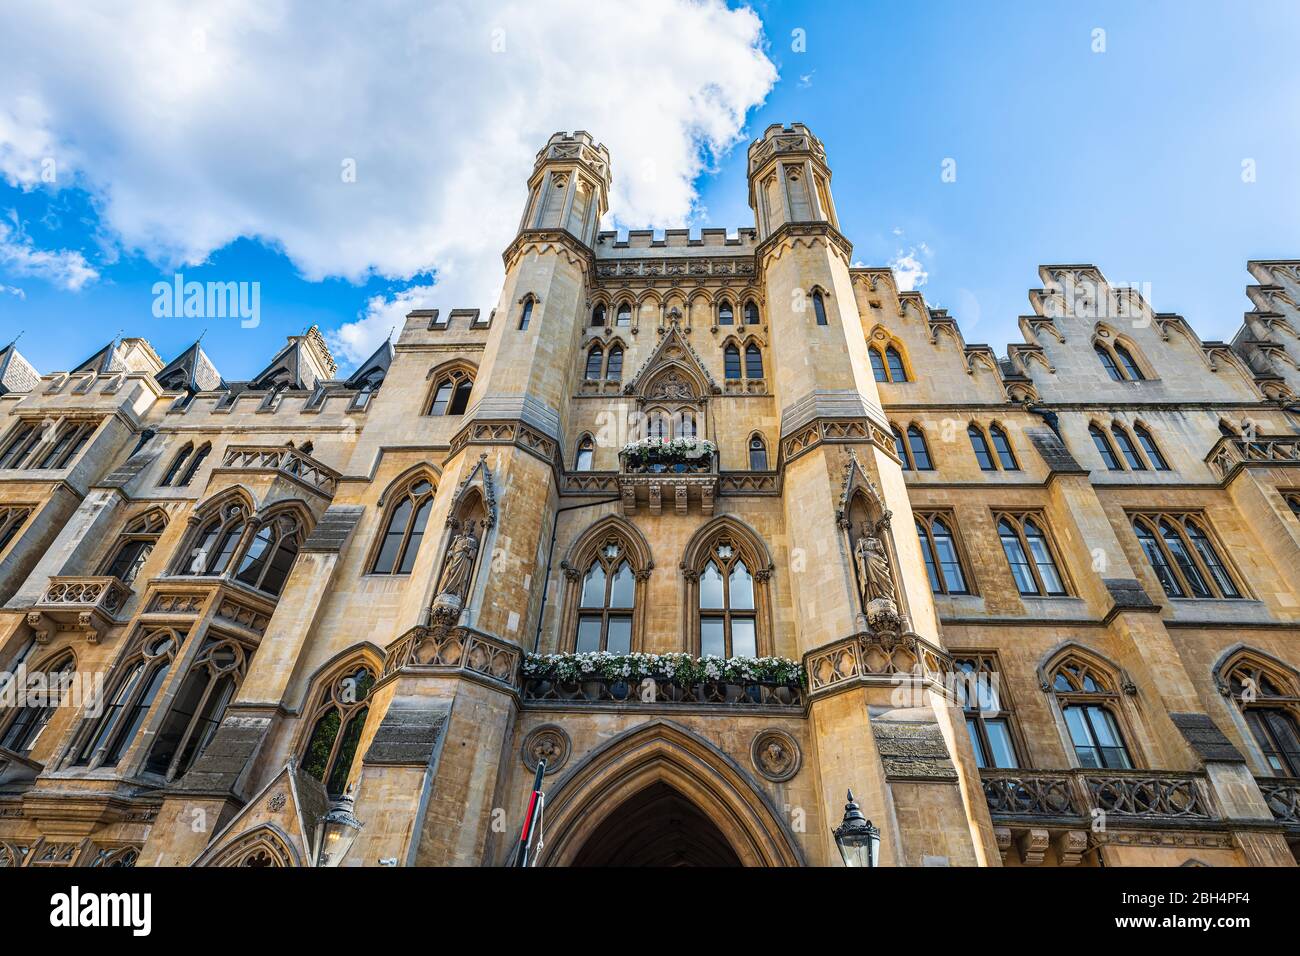 Londra, UK - 21 giugno 2018: Vista dell'architettura esterna grandangolare dello storico edificio dell'ufficio del procuratore generale con cielo blu e nessuno Foto Stock